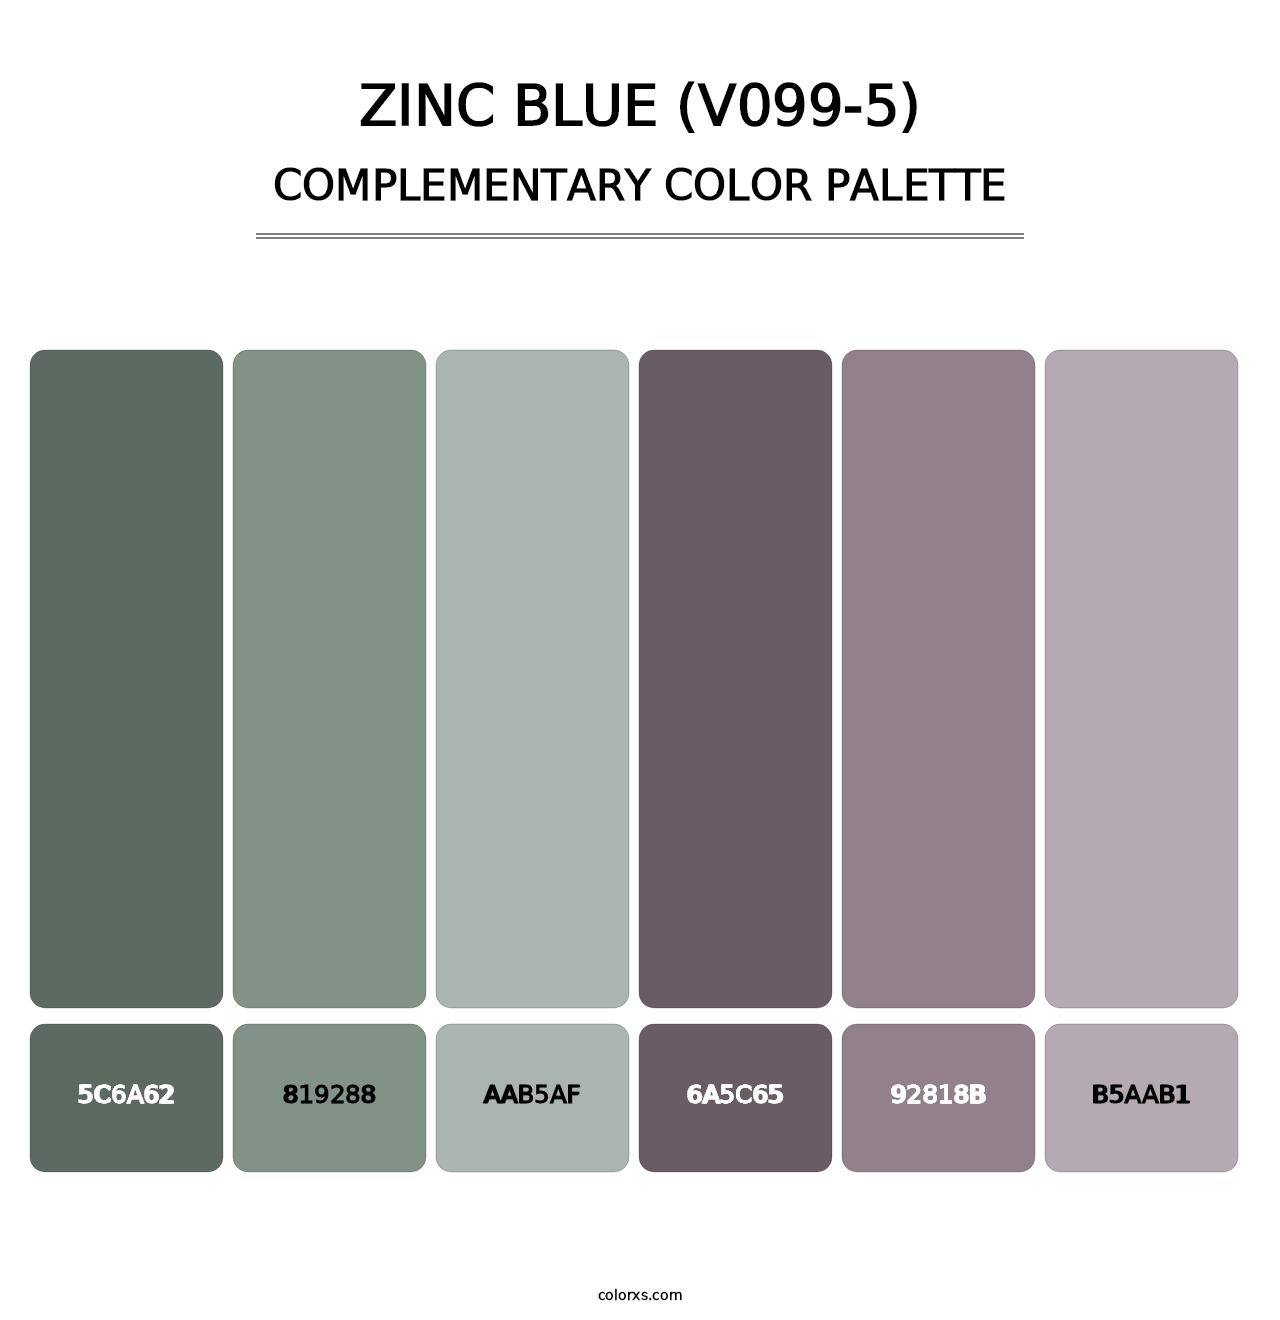 Zinc Blue (V099-5) - Complementary Color Palette